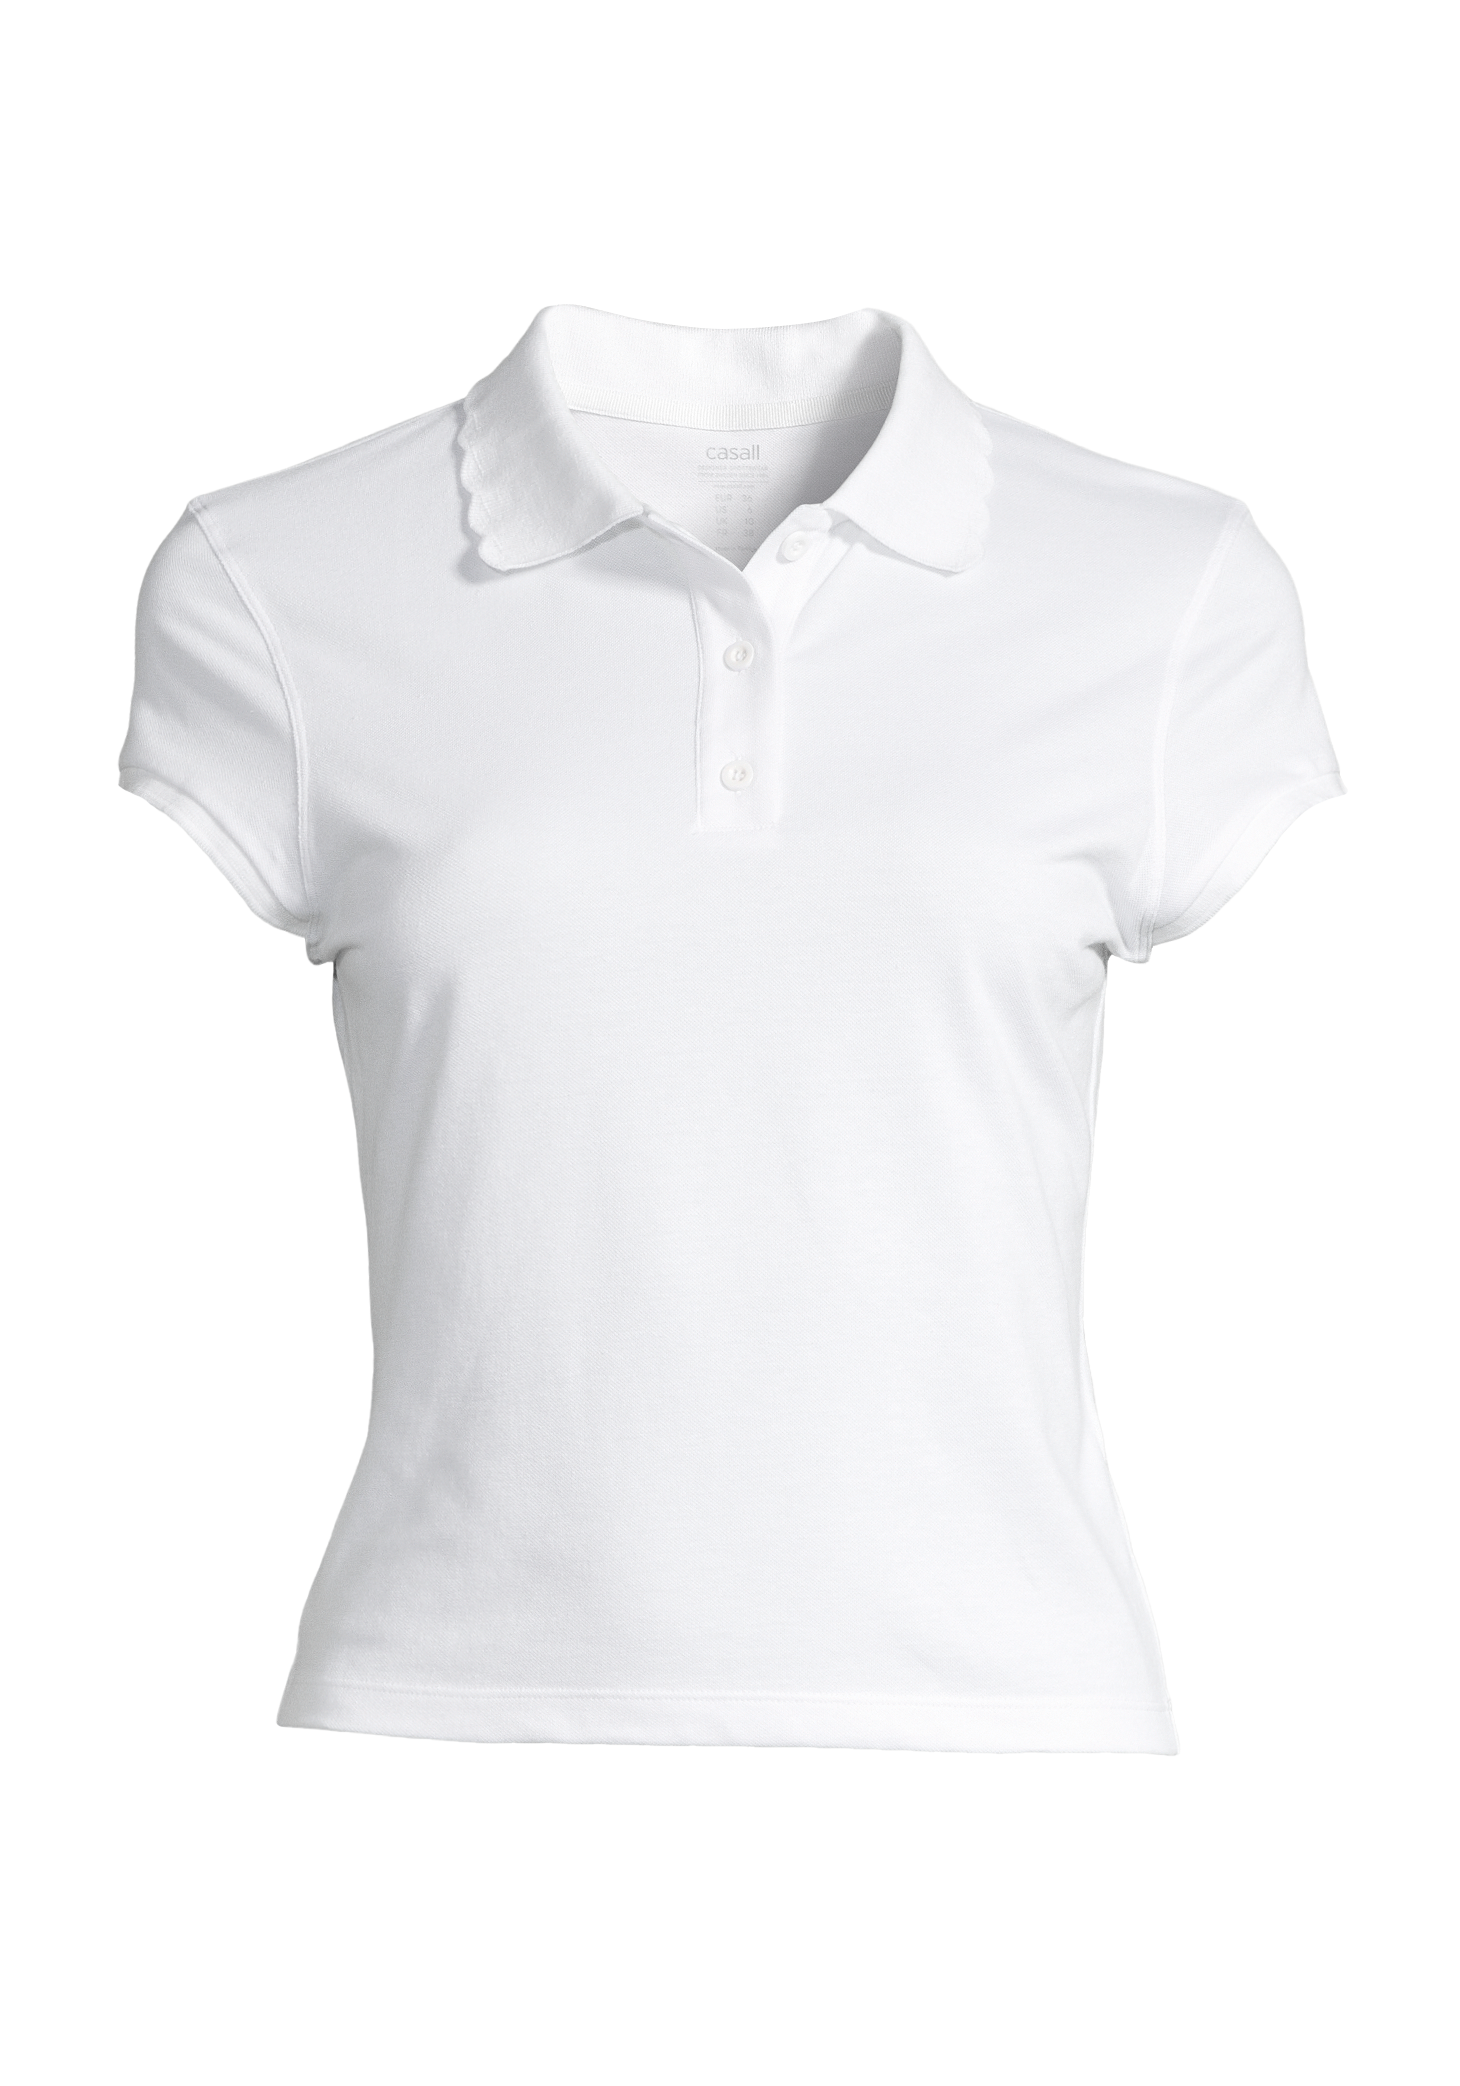 Court Polo Shirt - White